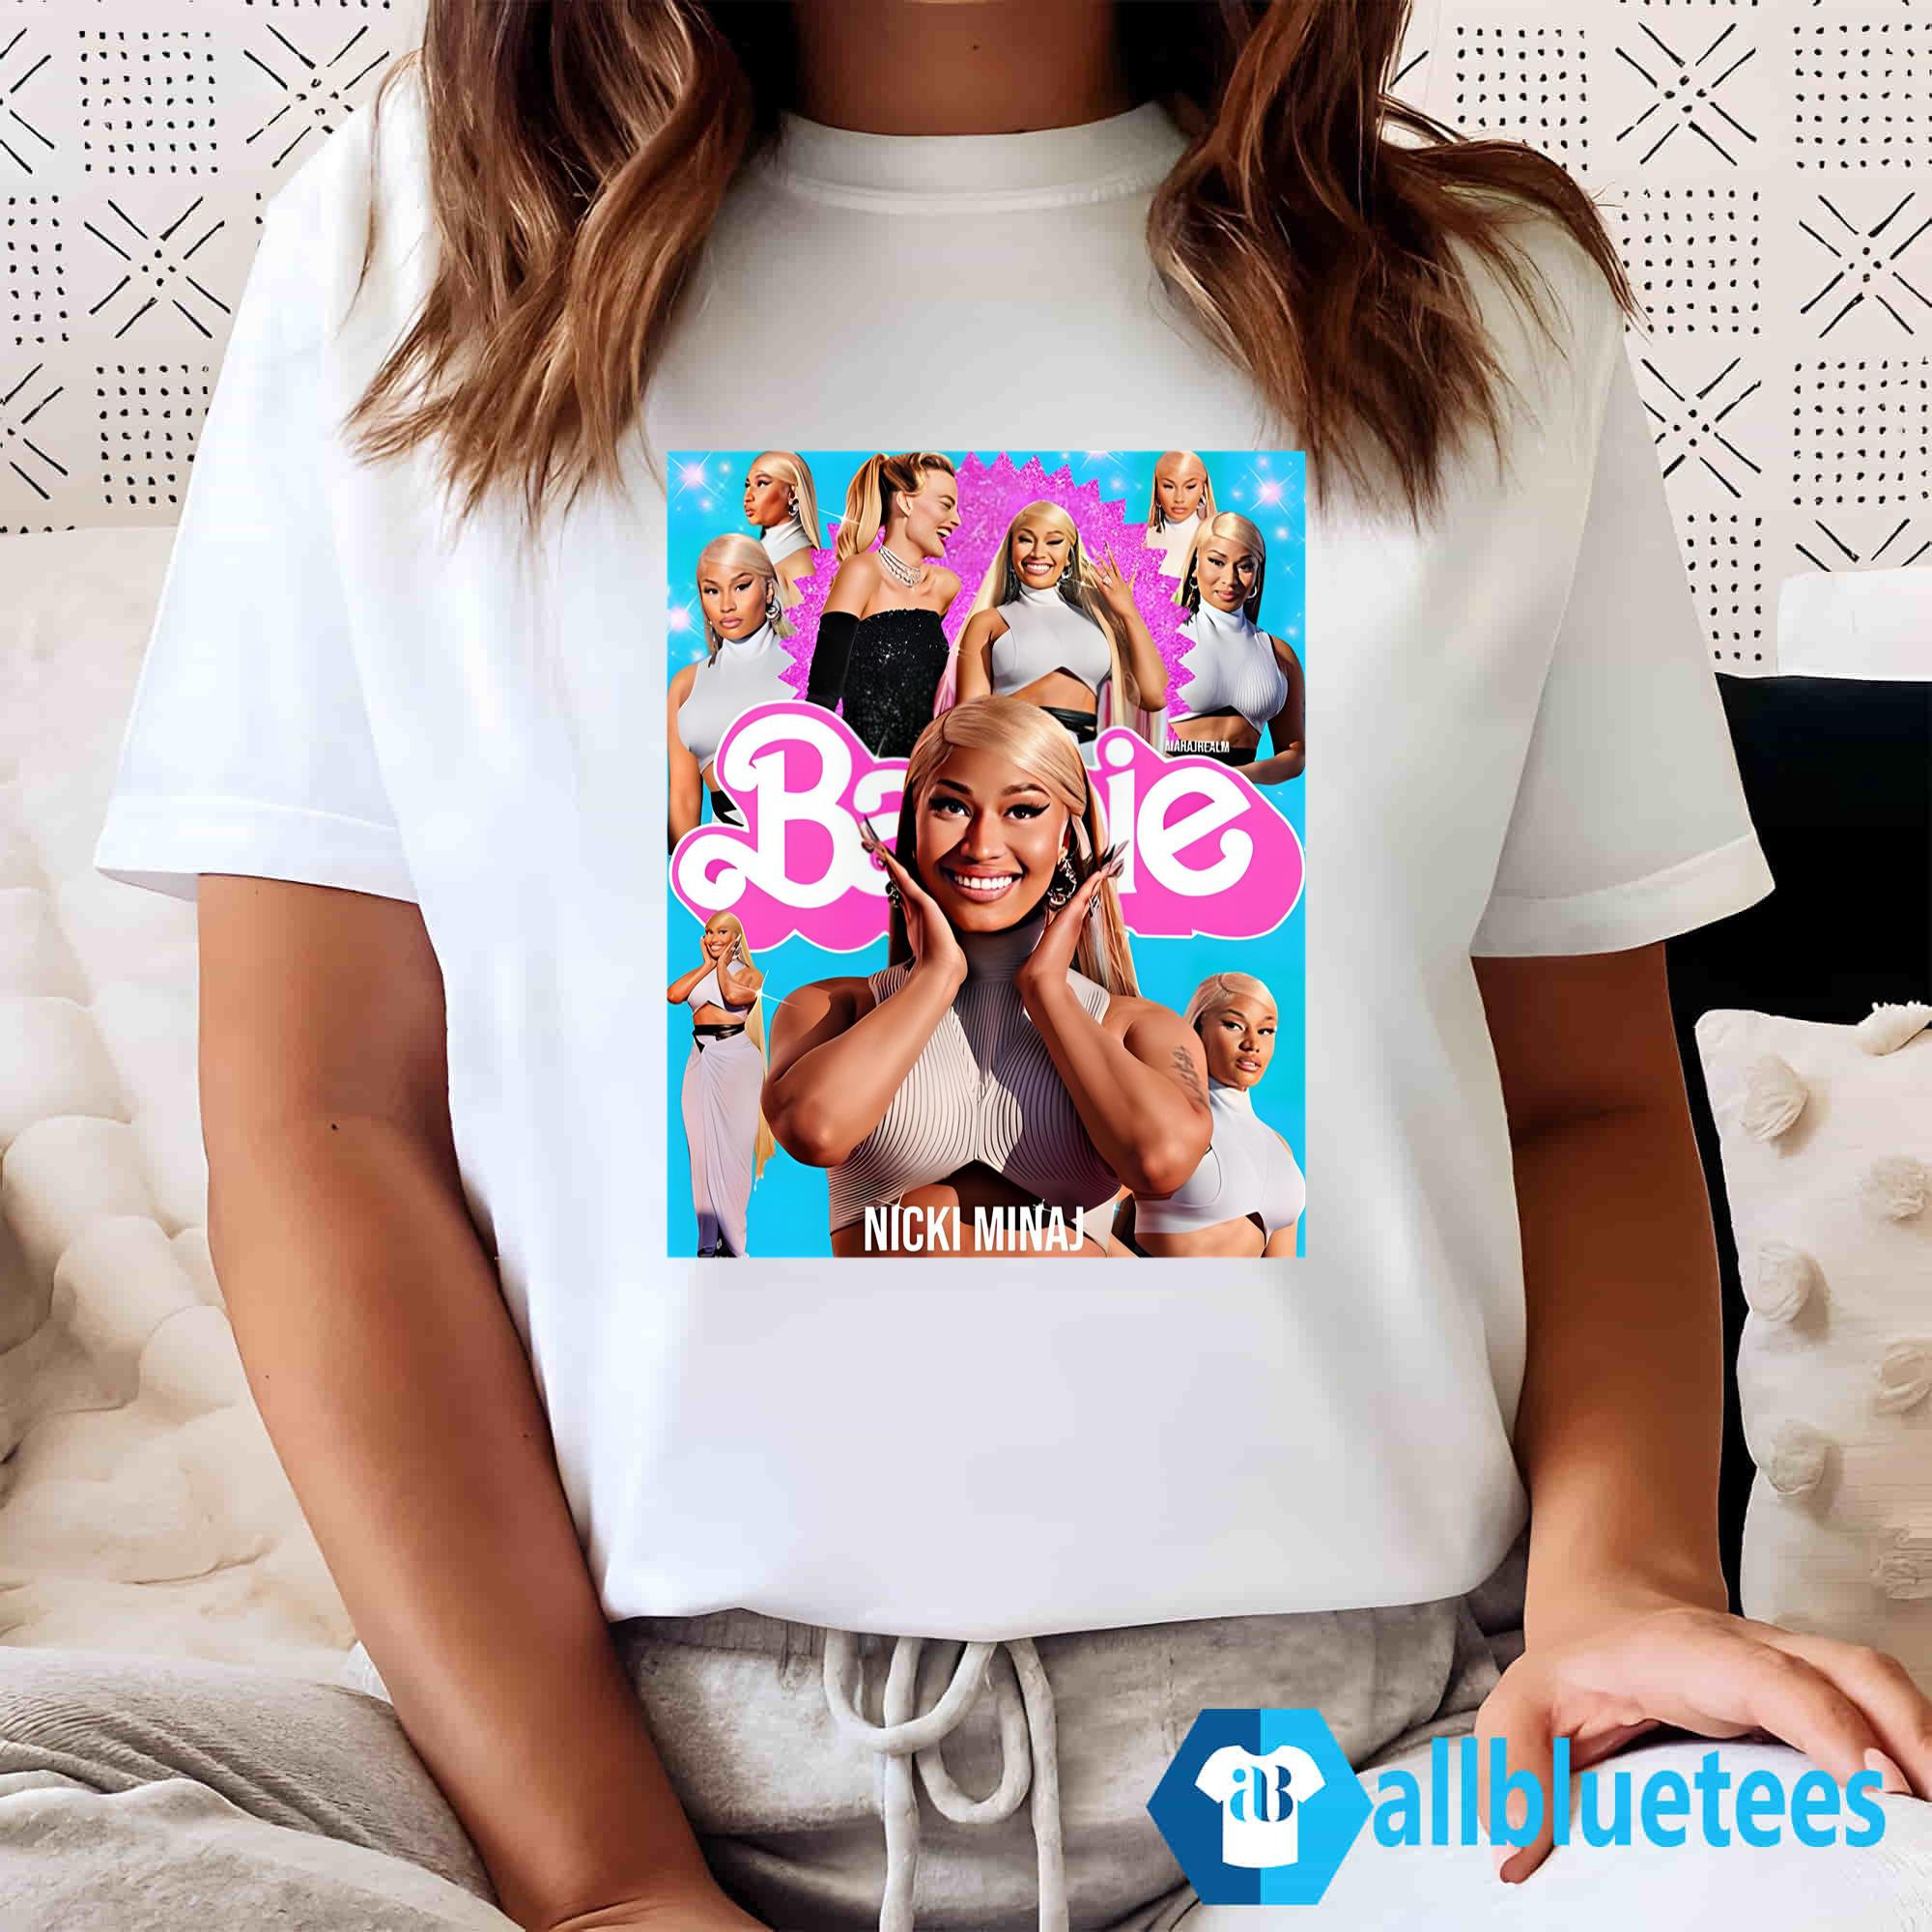 T-shirt Barbie - Adulto - Comprar em Mania de Mariah